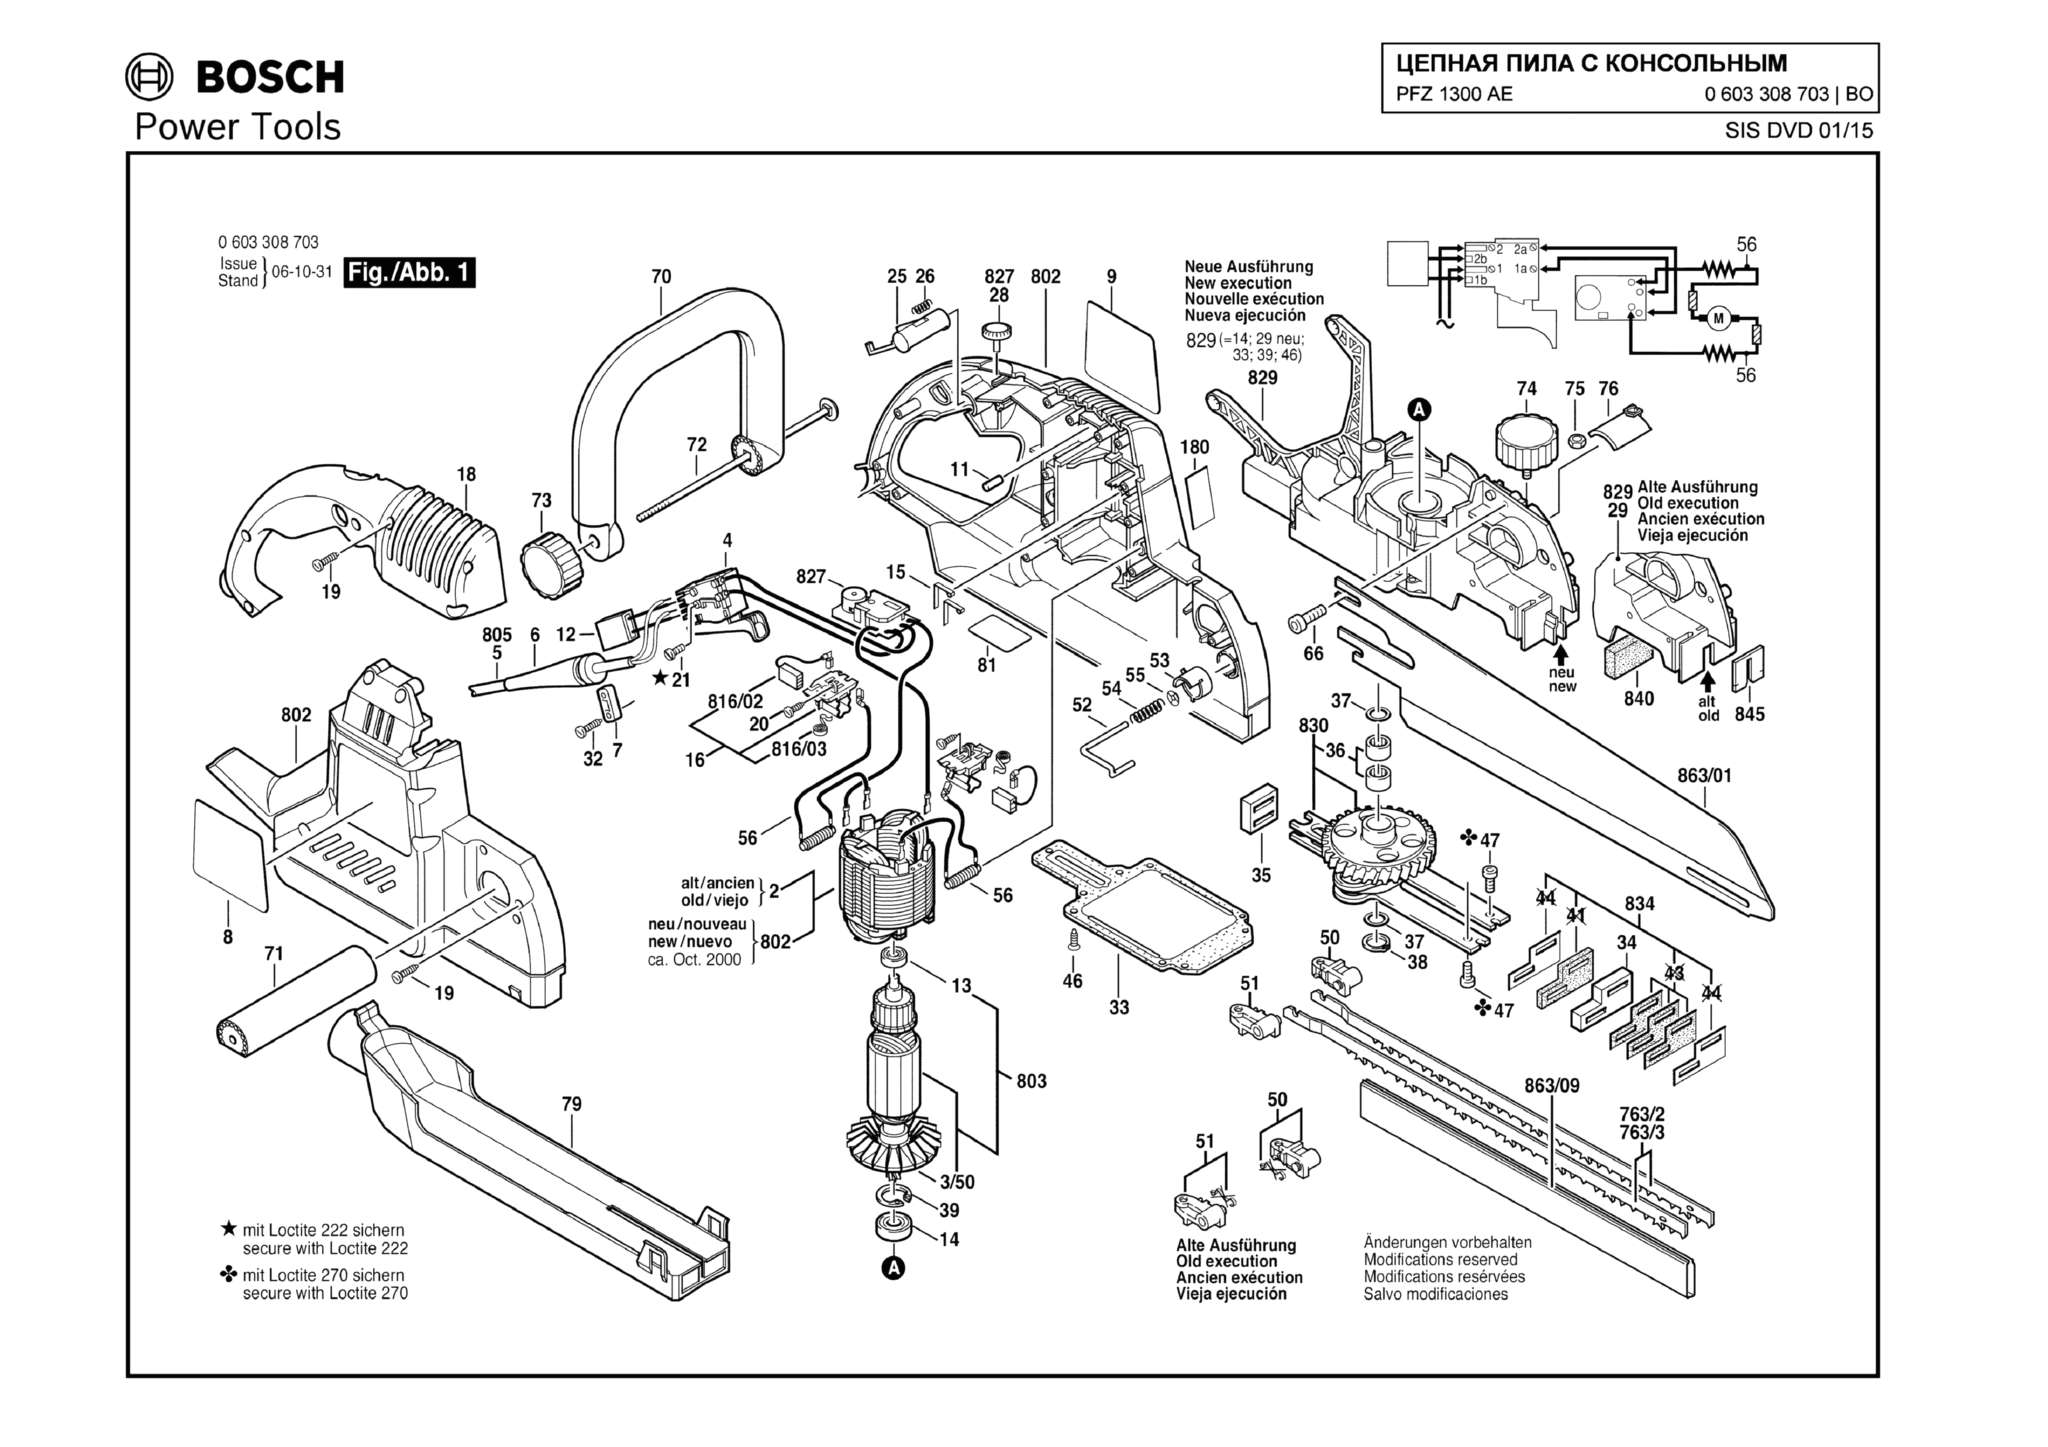 Запчасти, схема и деталировка Bosch PFZ 1300 AE (ТИП 0603308703)